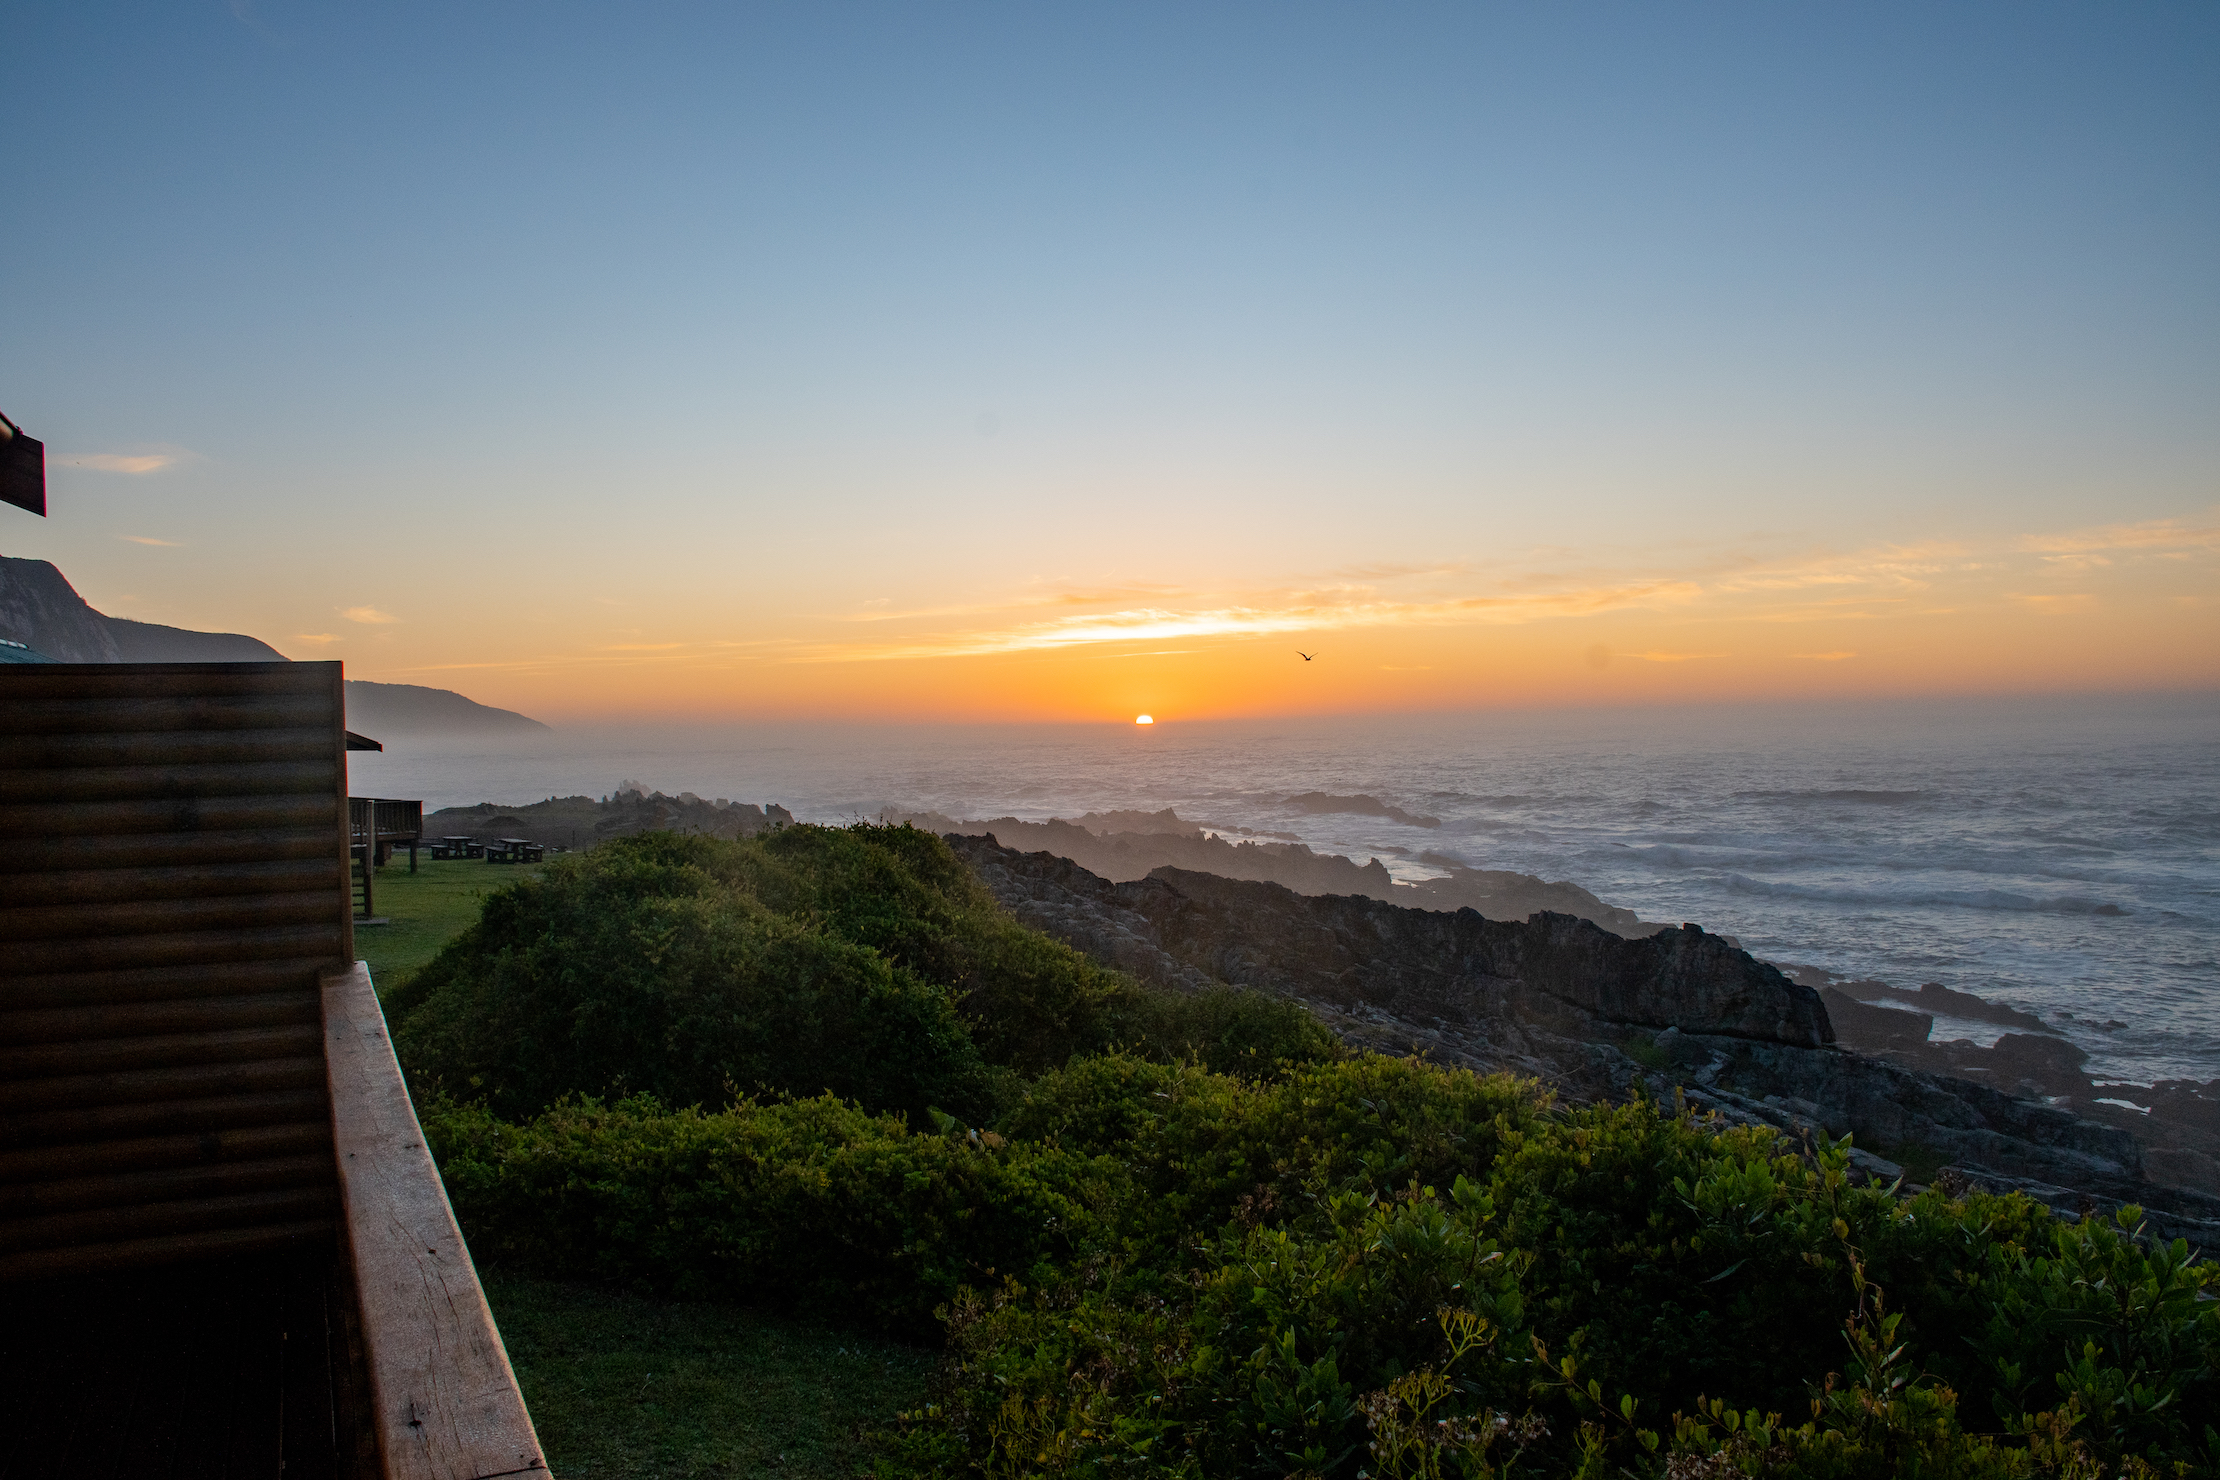 Ook de zonsopkomst in Zuid-Afrika is prachtig. Hoe mooi is dit uitzicht direct van ons balkon?